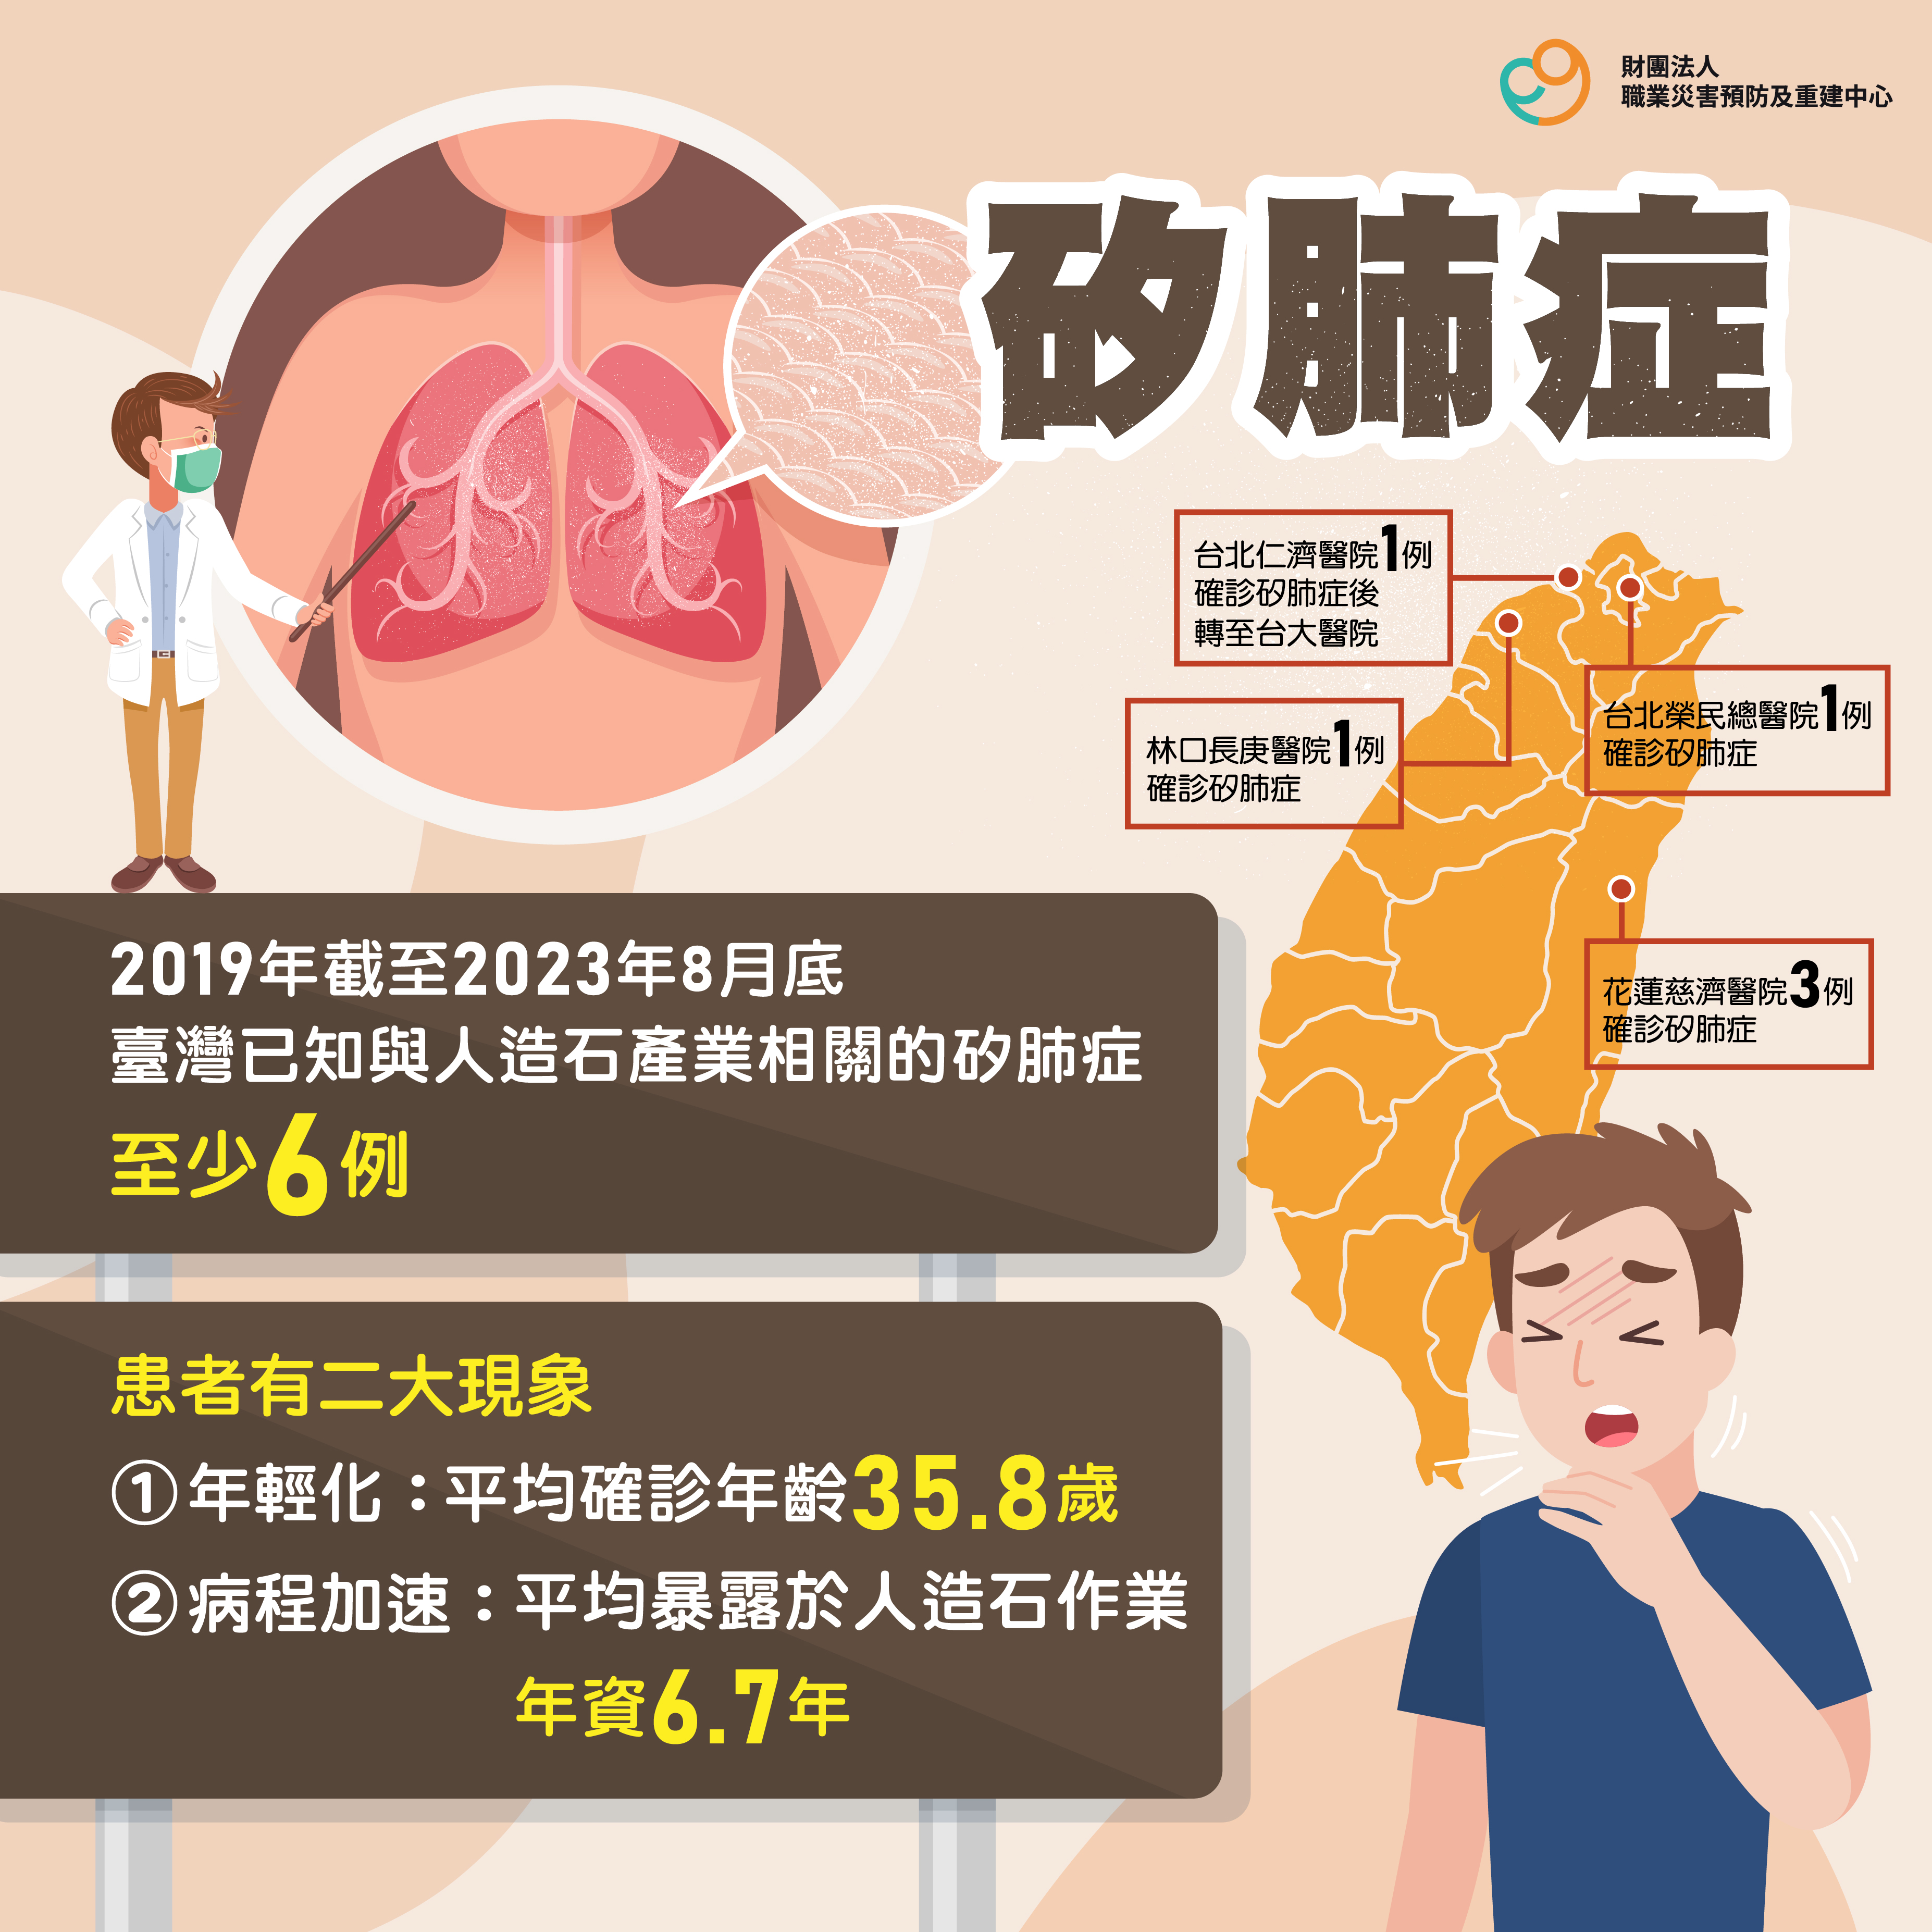 臺灣已知與人造石產業相關的矽肺症患者至少有6例，其平均確診年齡為35.8歲。